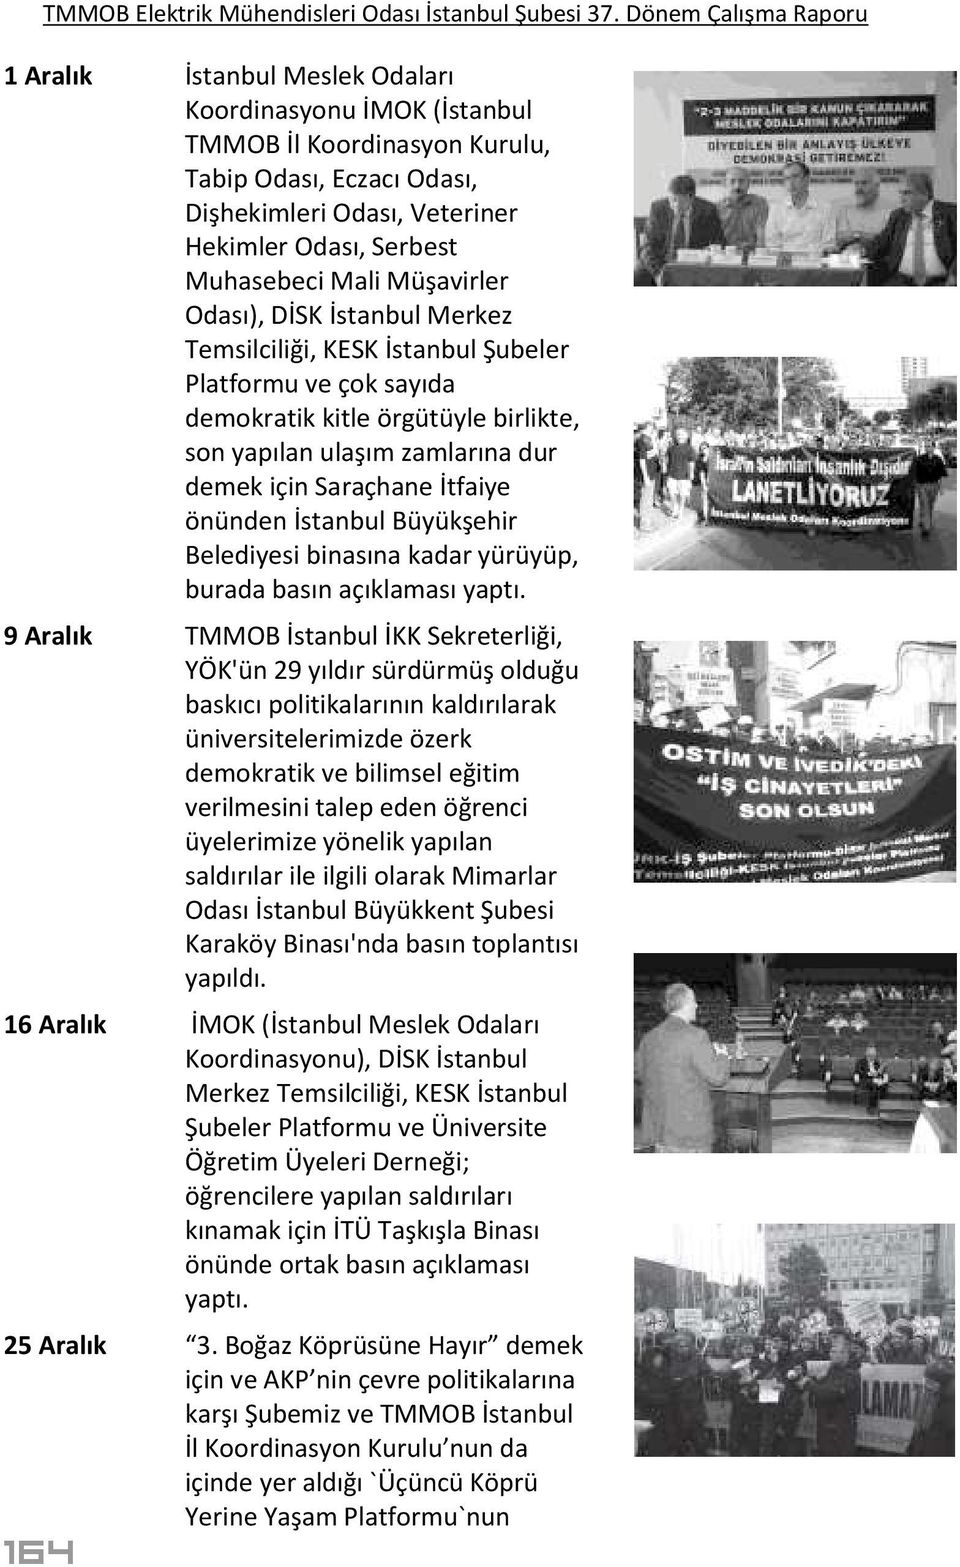 İstanbul Büyükşehir Belediyesi binasına kadar yürüyüp, burada basın açıklaması yaptı.